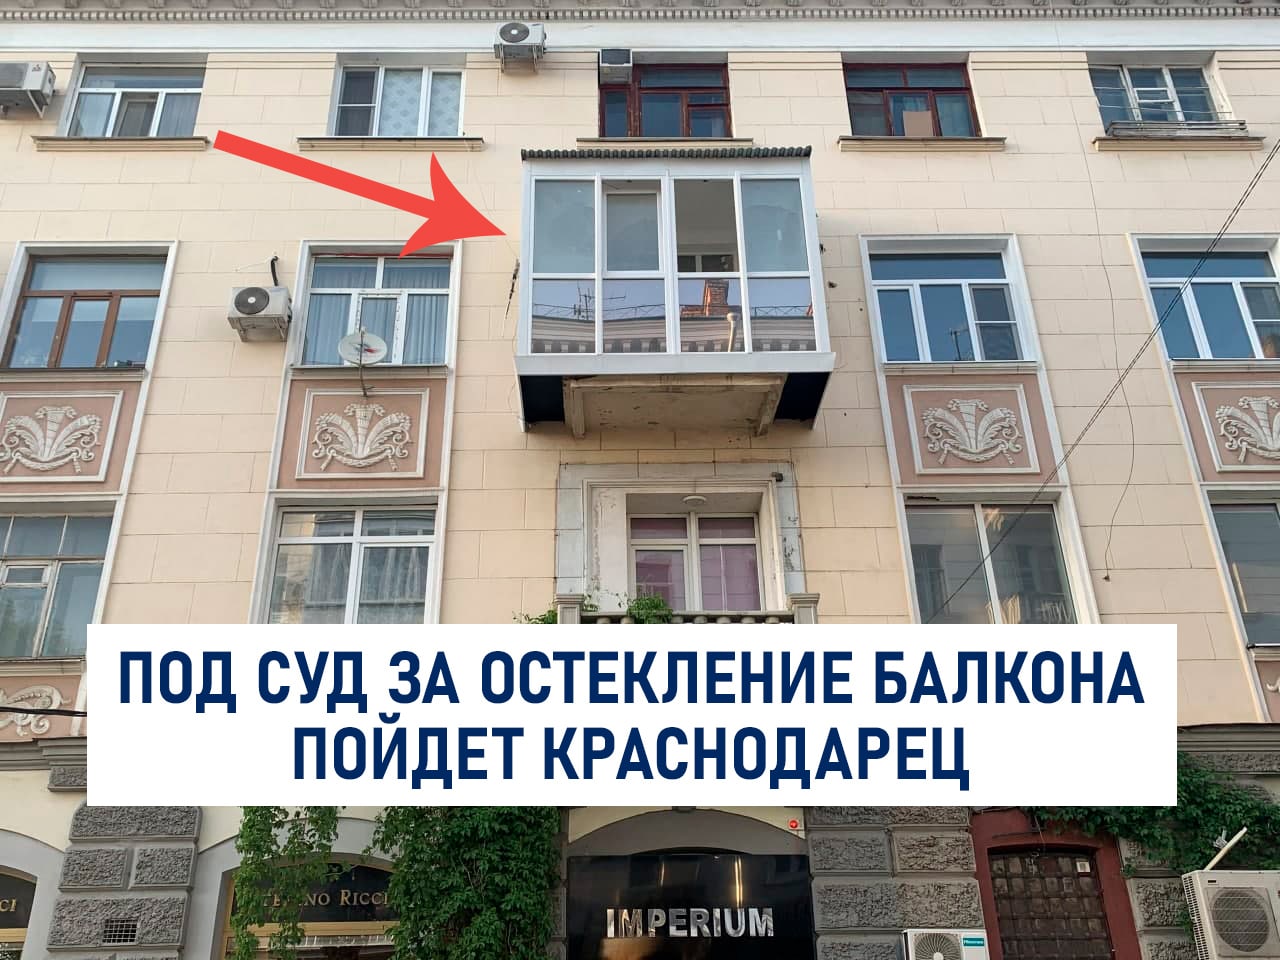 Мэрия Краснодара подала в суд на владельца квартиры, который застеклил балкон исторического здания